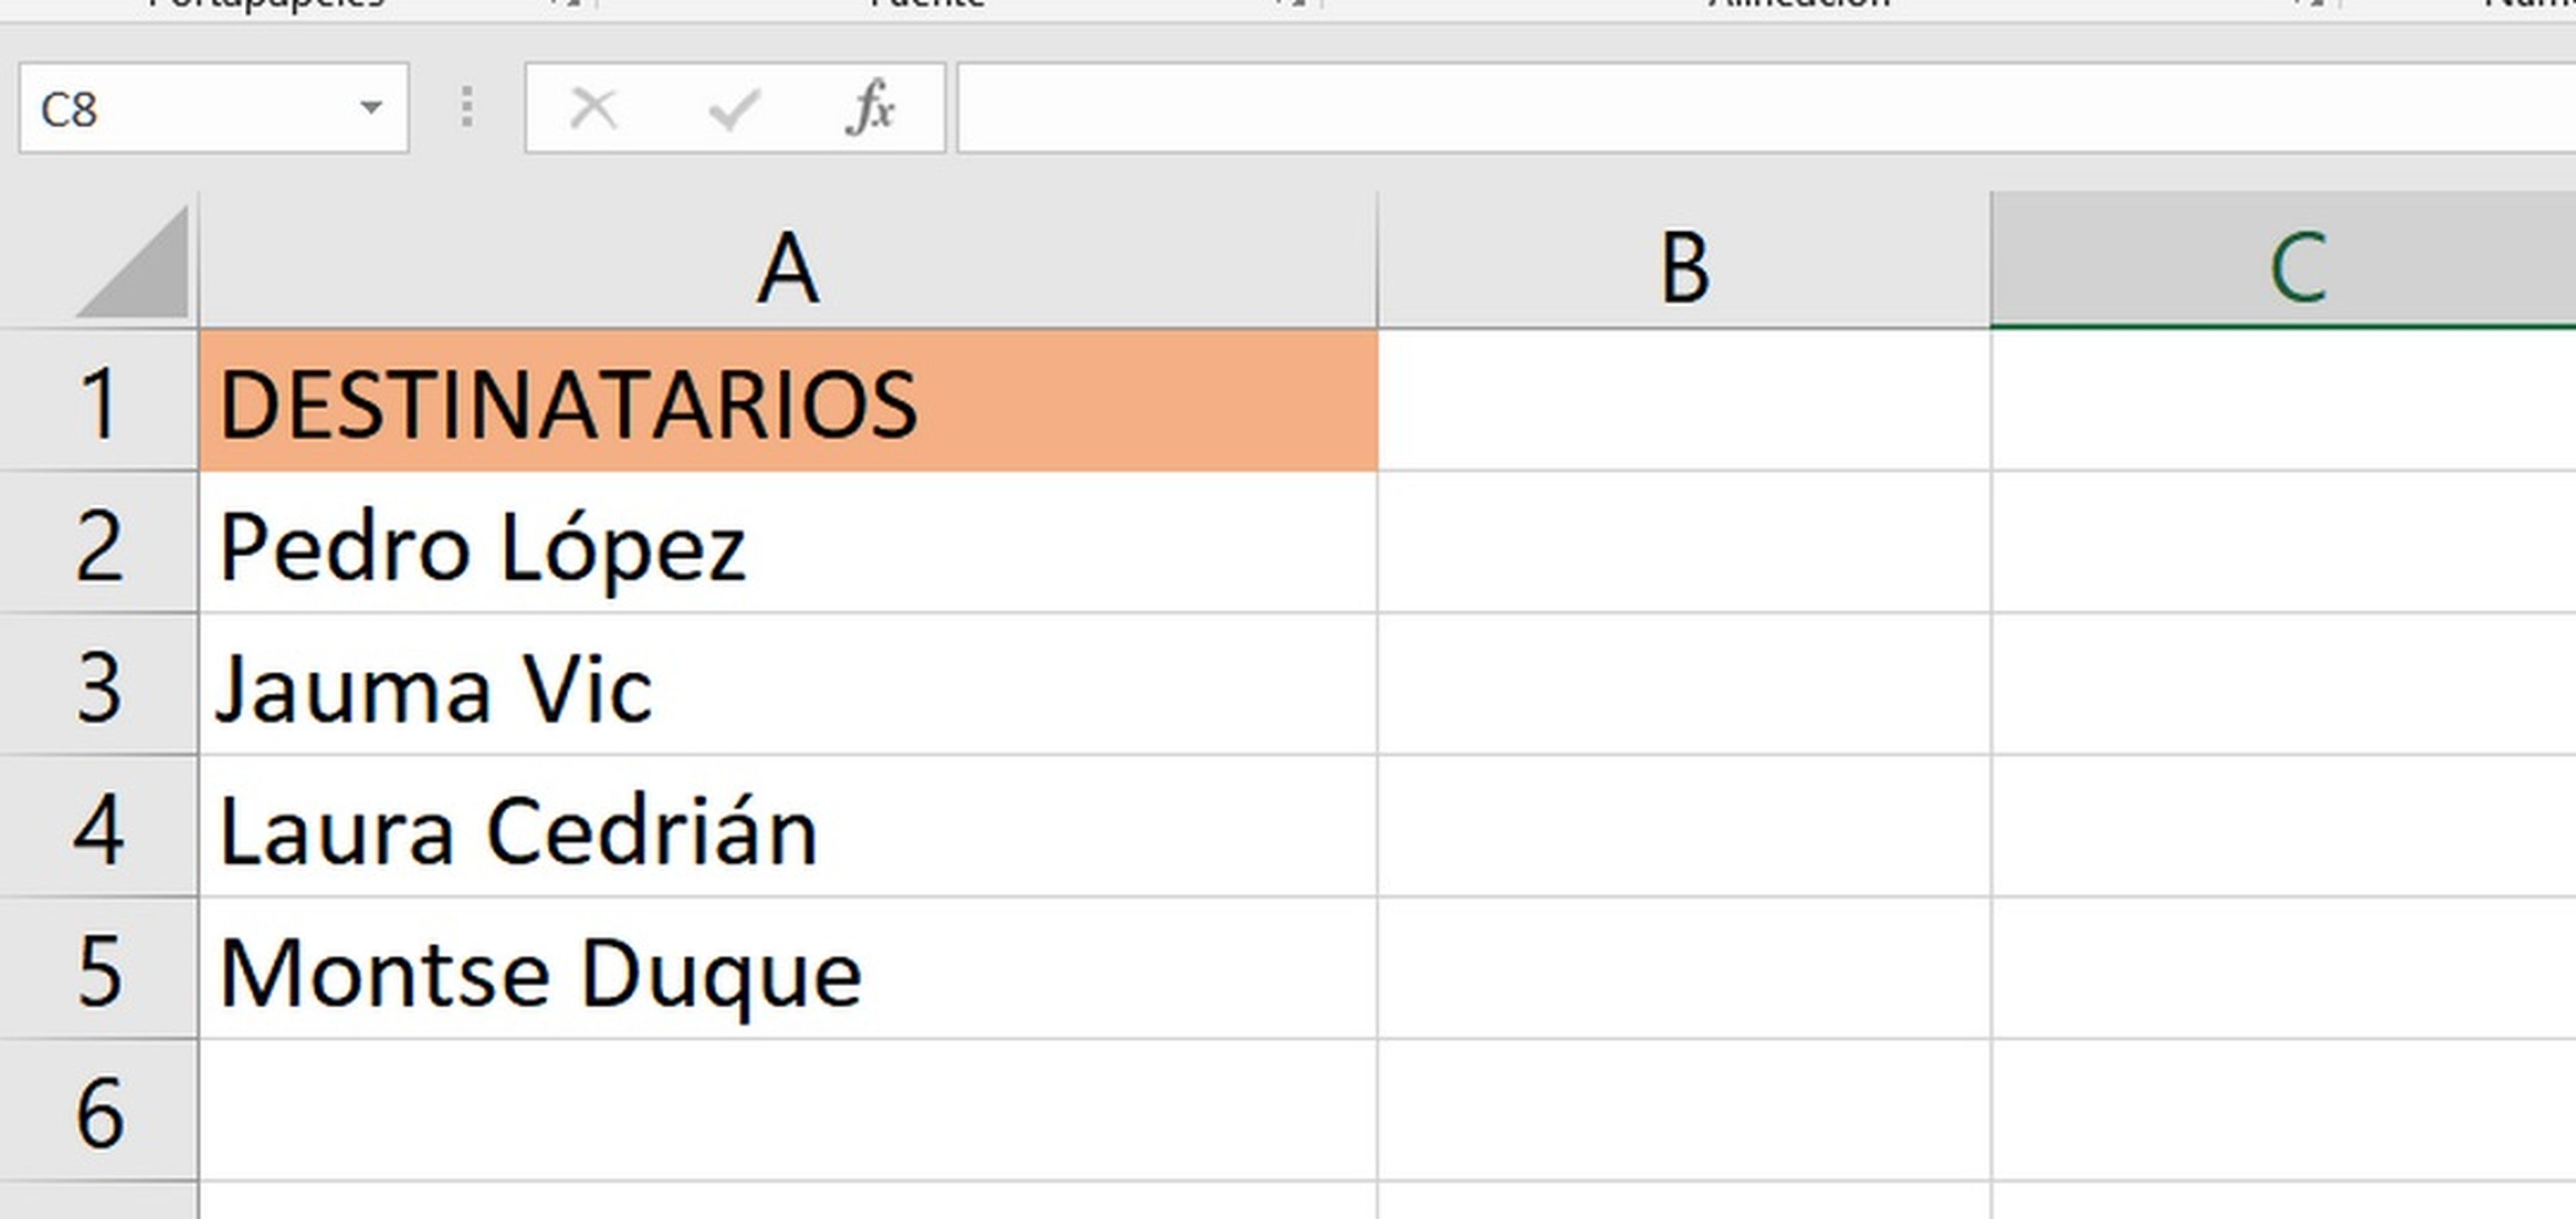 Cómo vincular los datos de un Excel a Word